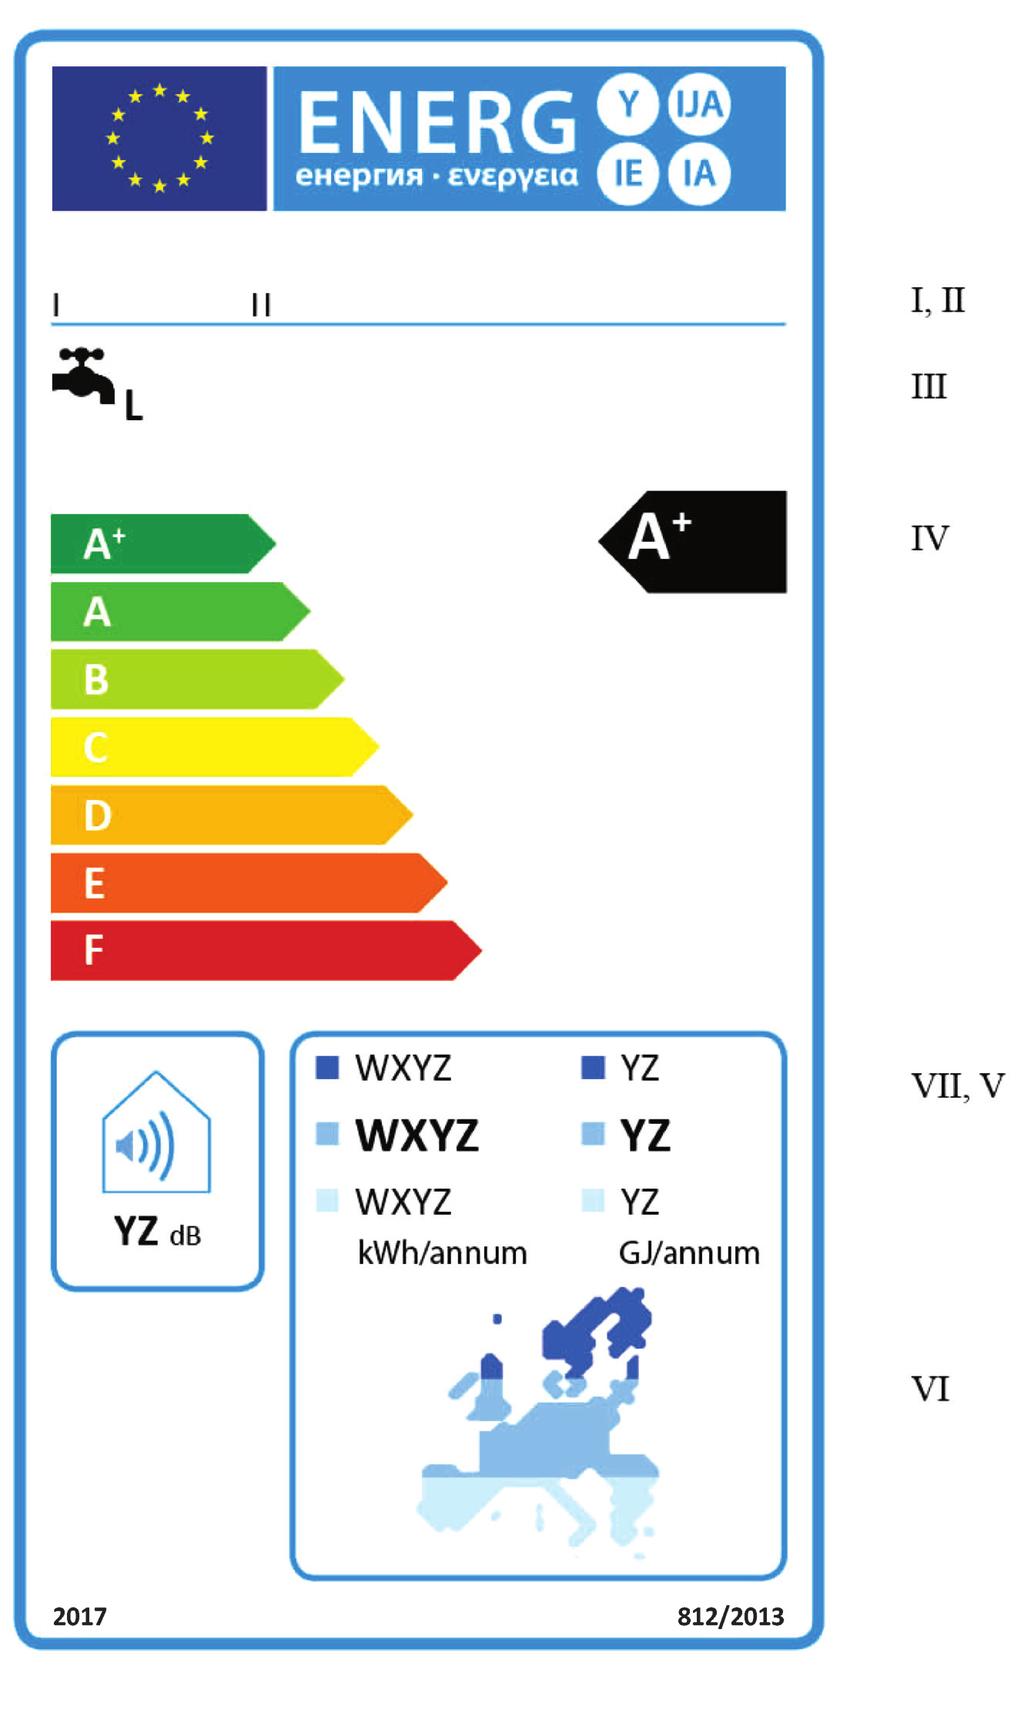 6.9.2013 Jurnalul Oficial al Uniunii Europene L 239/99 1.2.2. Instalații solare pentru încălzirea apei din clasele de randament energetic aferent încălzirii apei A + -F (a) Eticheta trebuie să conțină informațiile enumerate la punctul 1.